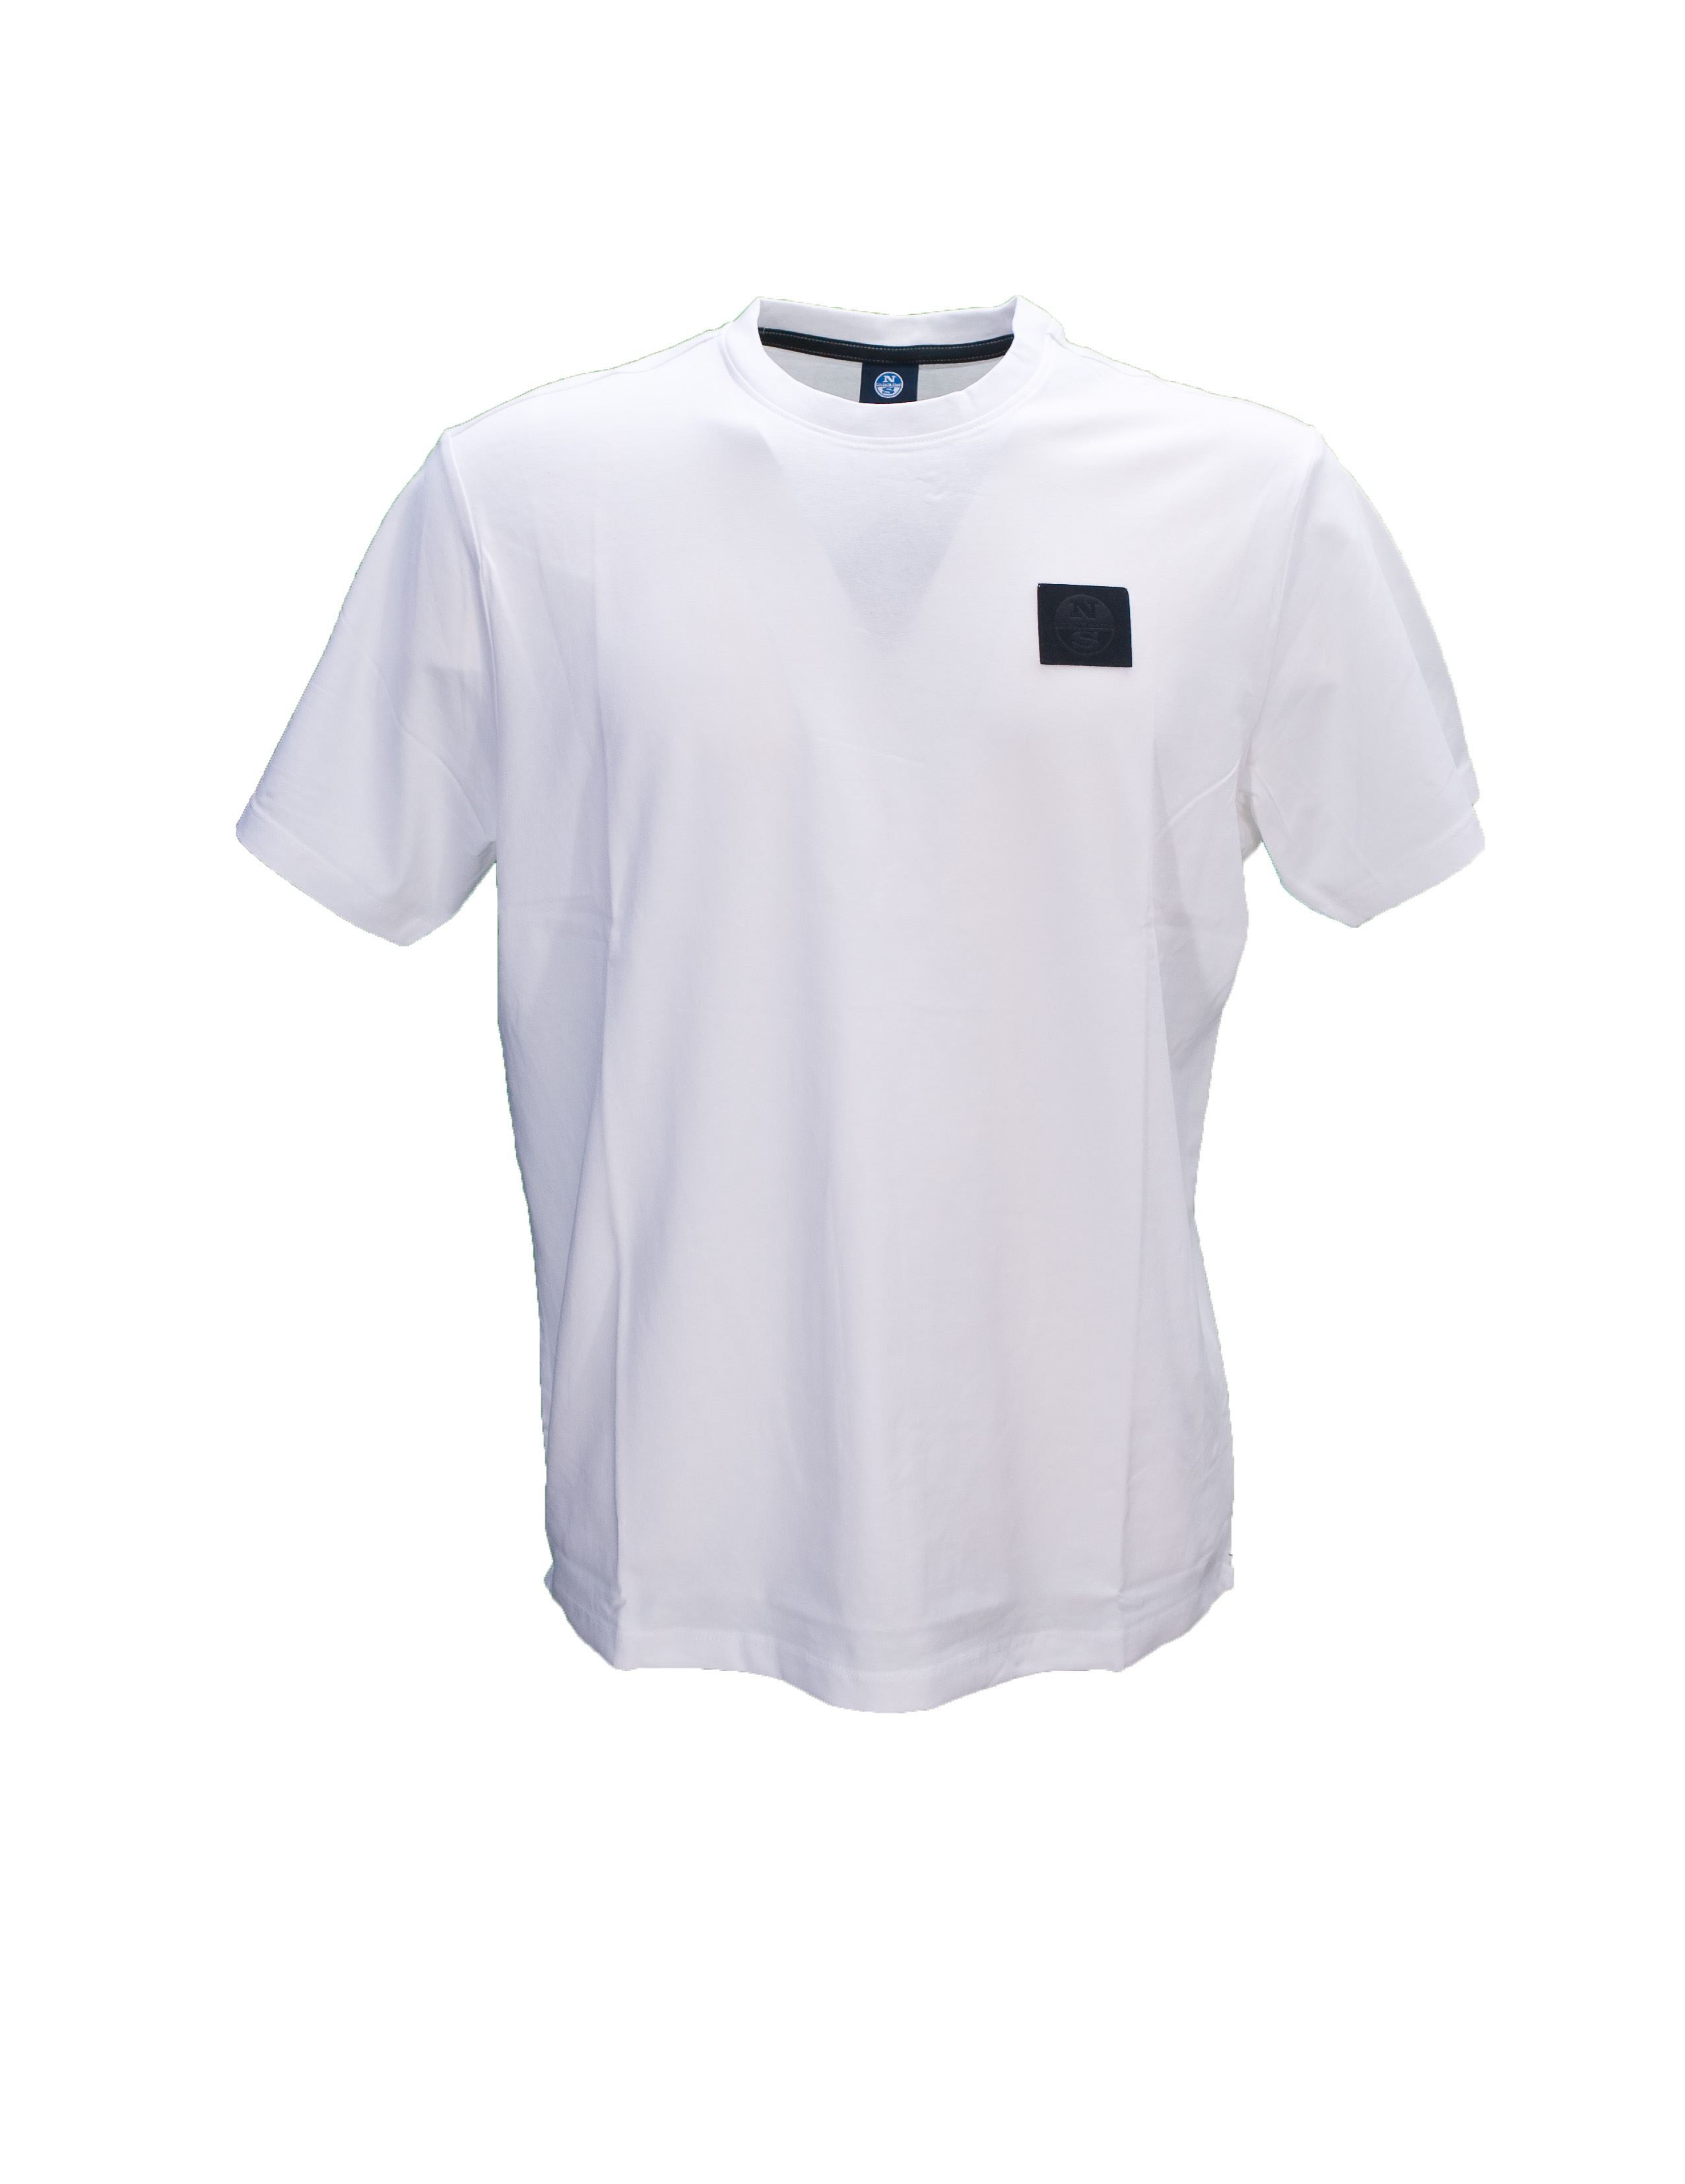 Immagine di T-Shirt base cotone bianca